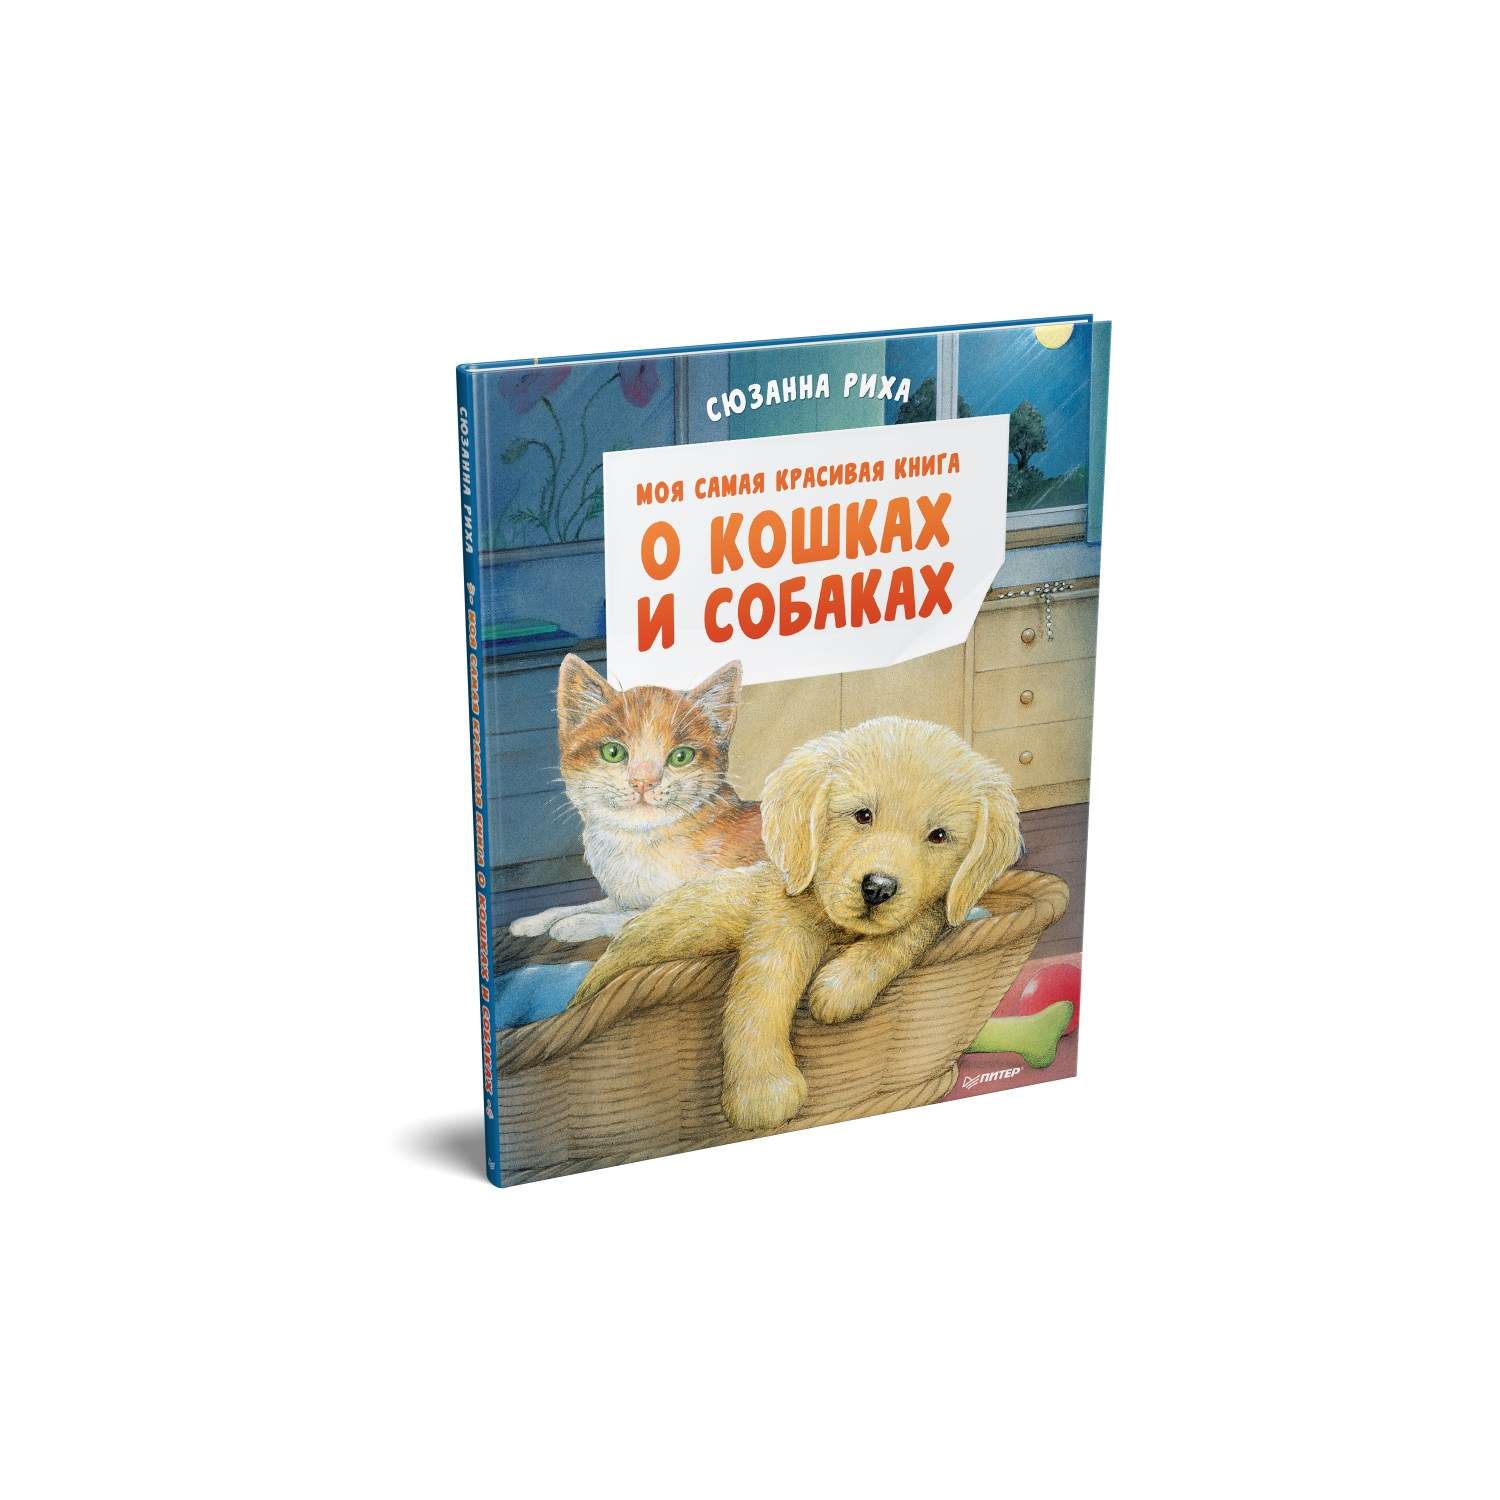 Книга Моя самая красивая книга о кошках и собаках - фото 1